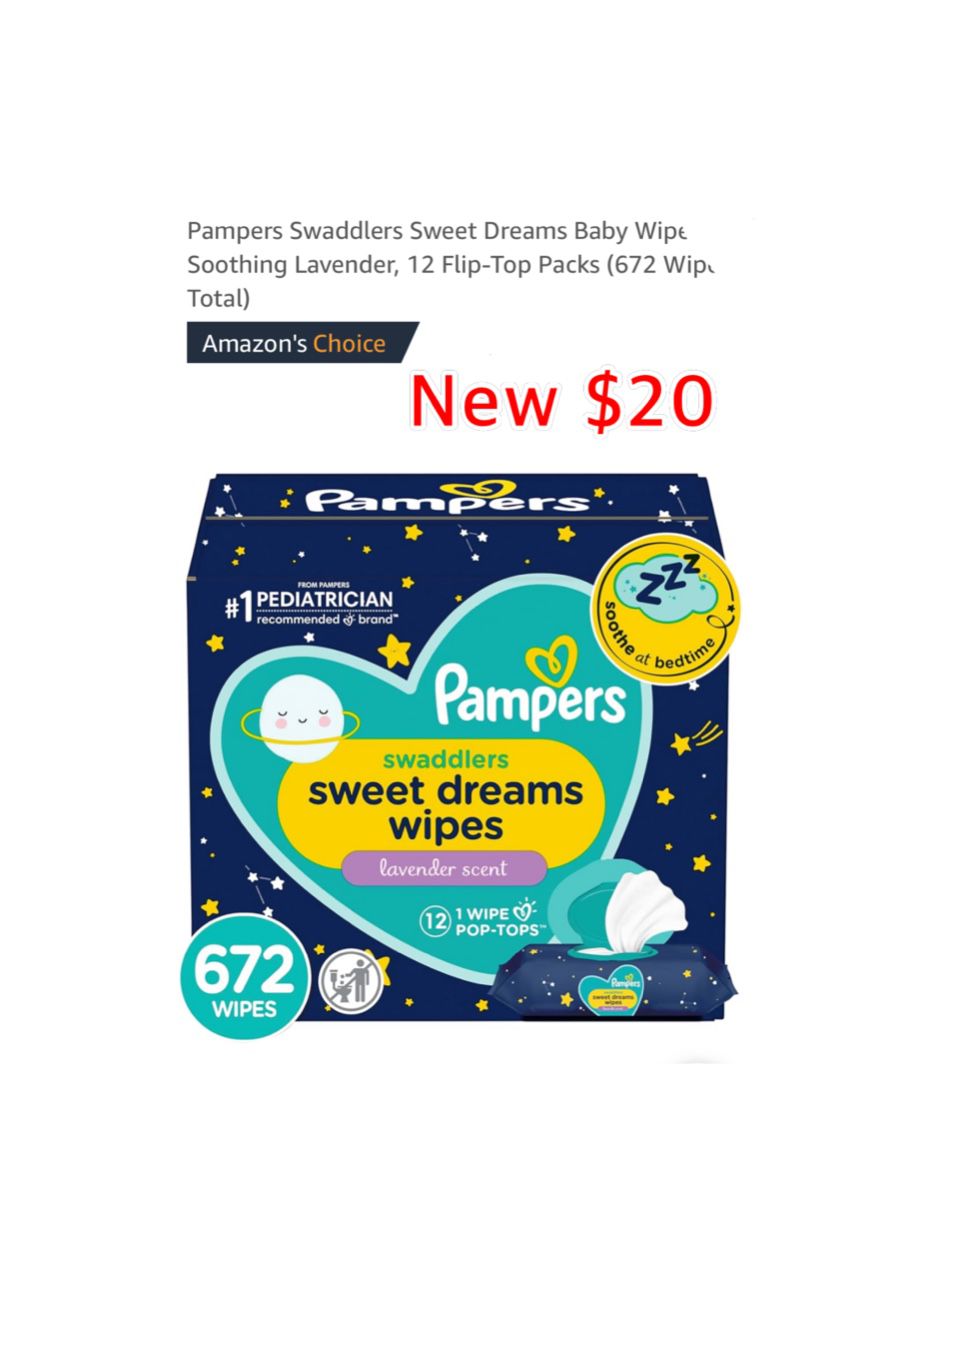 New Pampers Swaddlers Sweet Dreams Baby Wipes, Soothing Lavender, 12 Flip-Top Packs (672 Wipes Total) $20  East Palmdale 